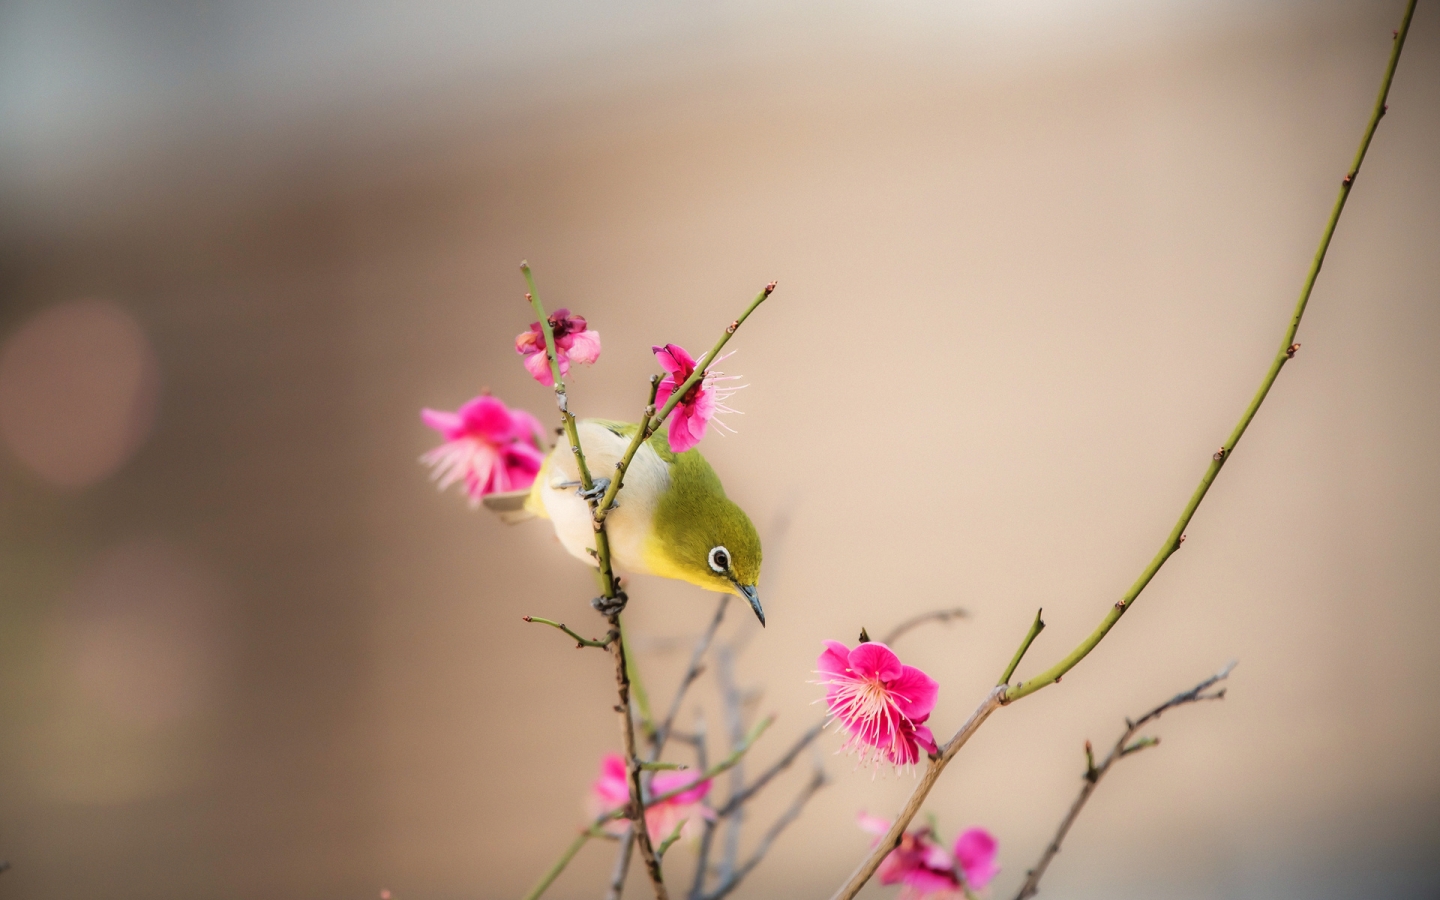 Little Bird on a Branch for 1440 x 900 widescreen resolution